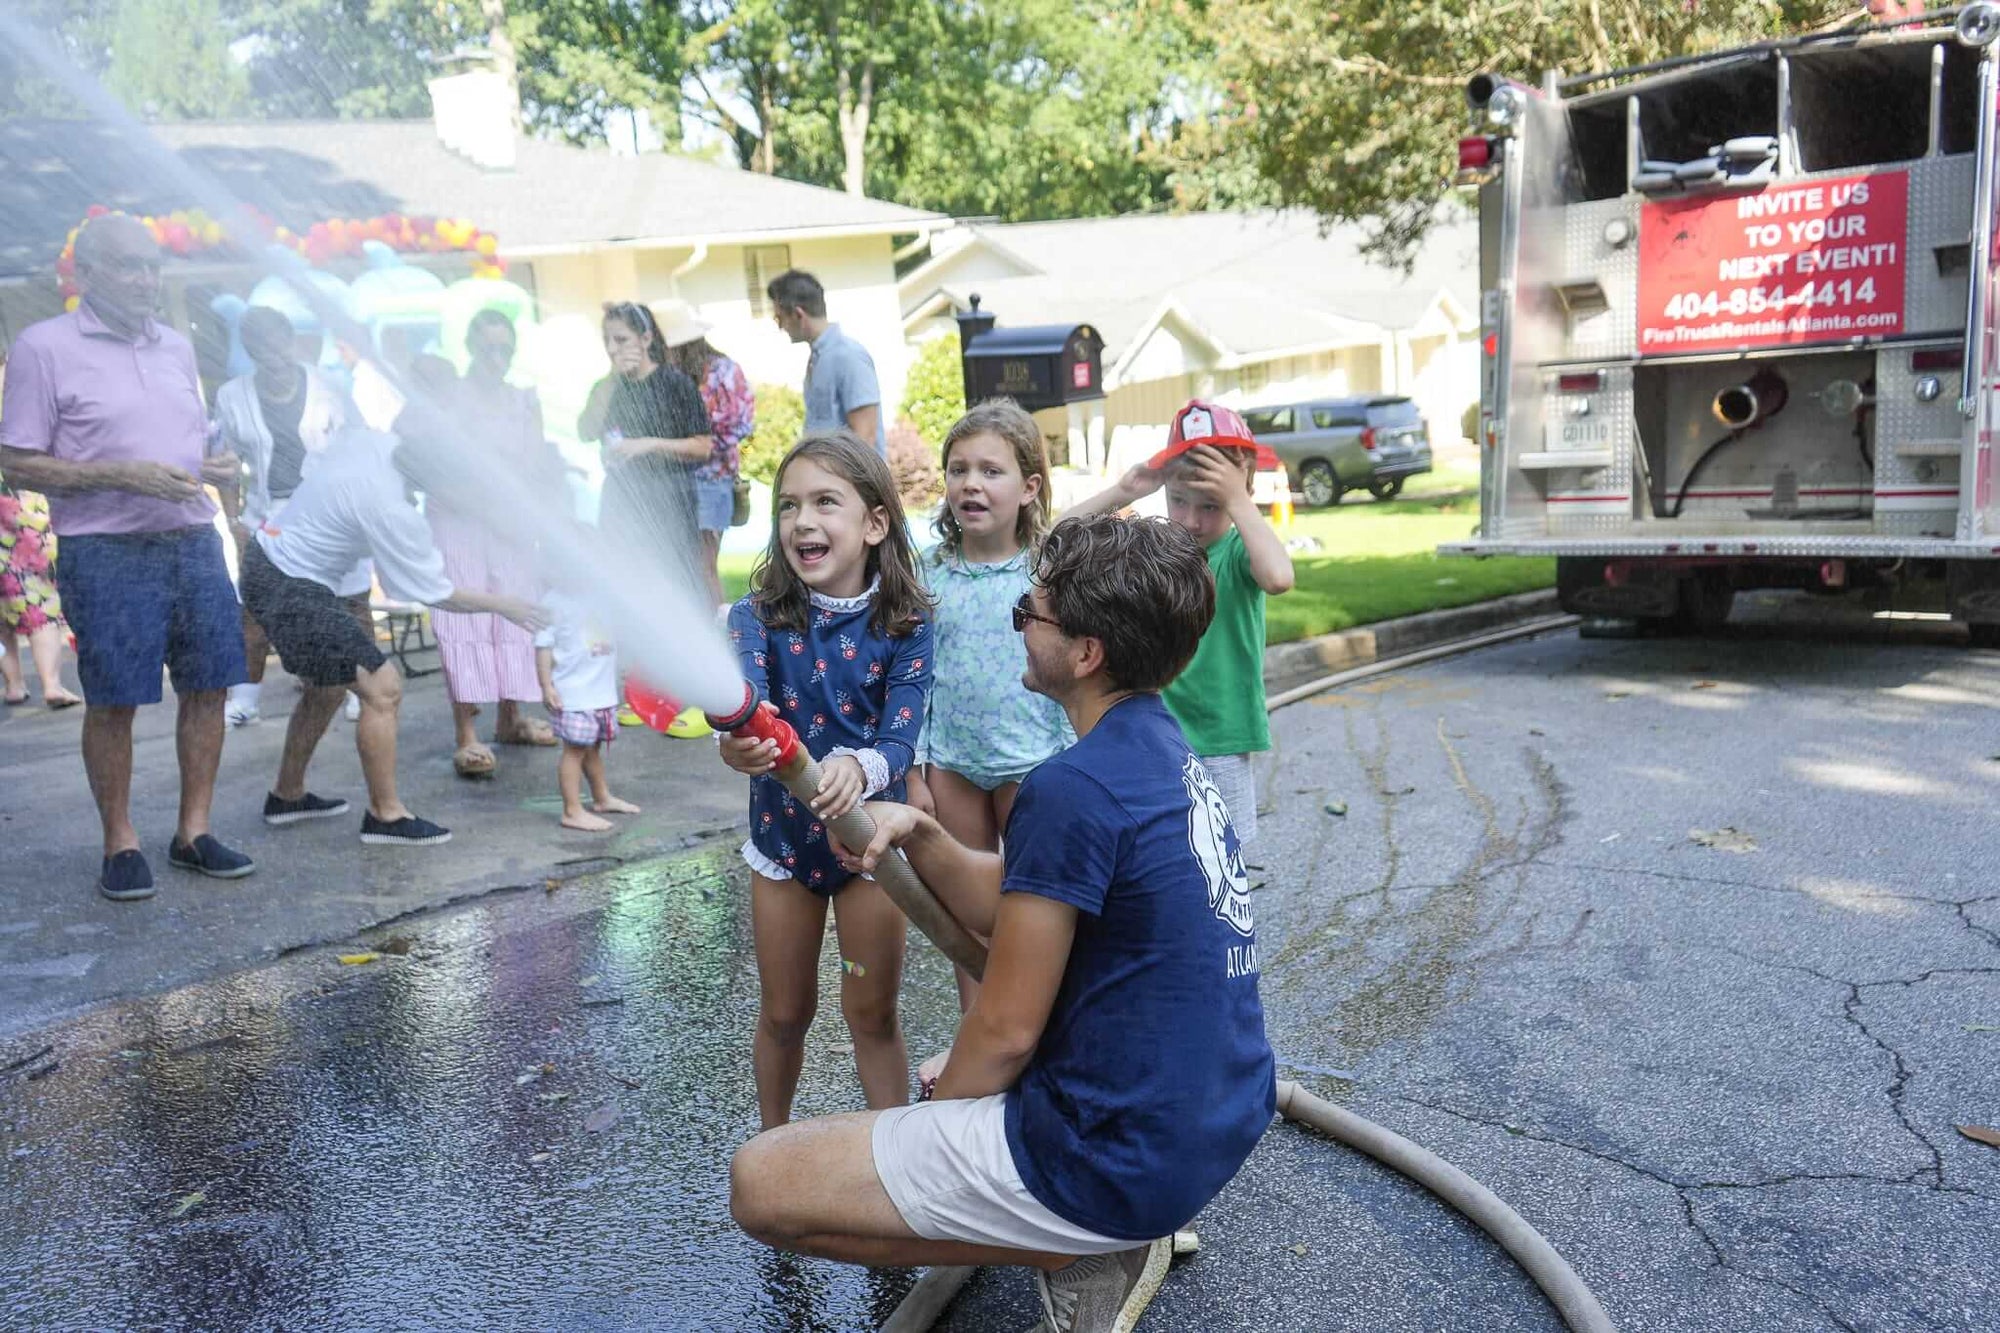 Fire Truck Rentals of Atlanta: Make Your Child's Birthday Unforgettable